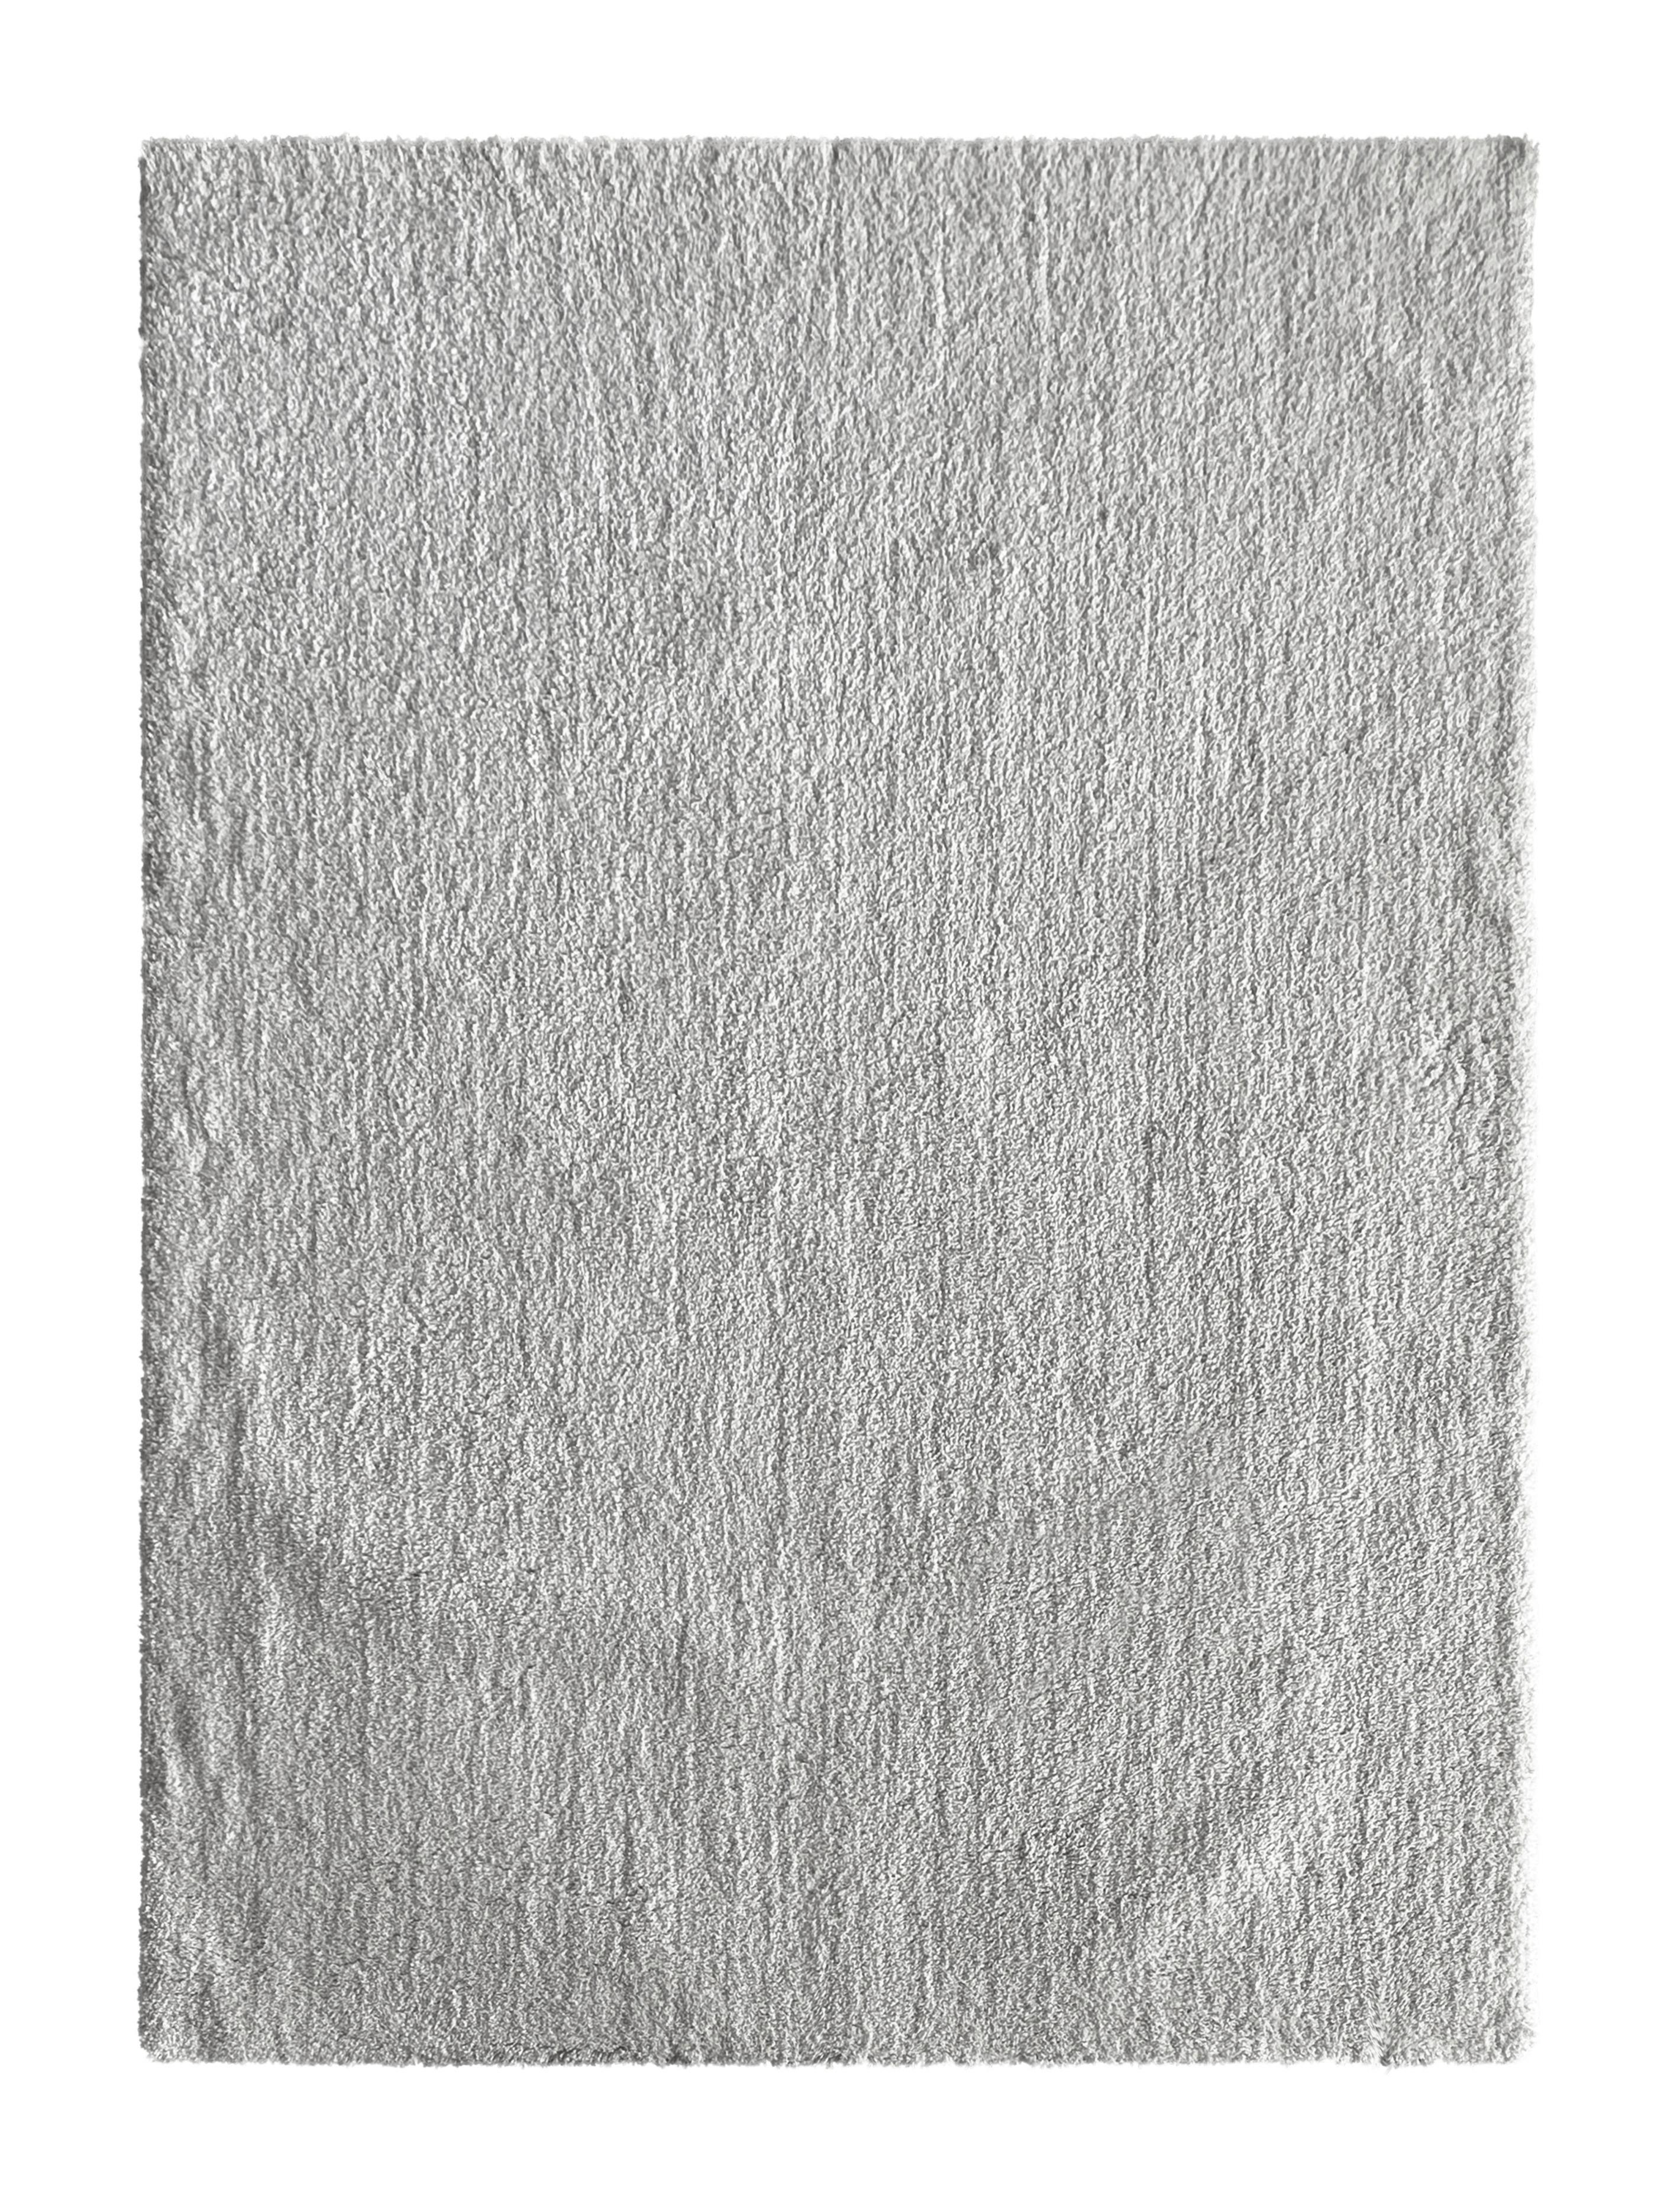 Hochflorteppich Silberfraben Kira 2, 160x220 cm - Silberfarben, MODERN, Textil (160/220cm) - Luca Bessoni